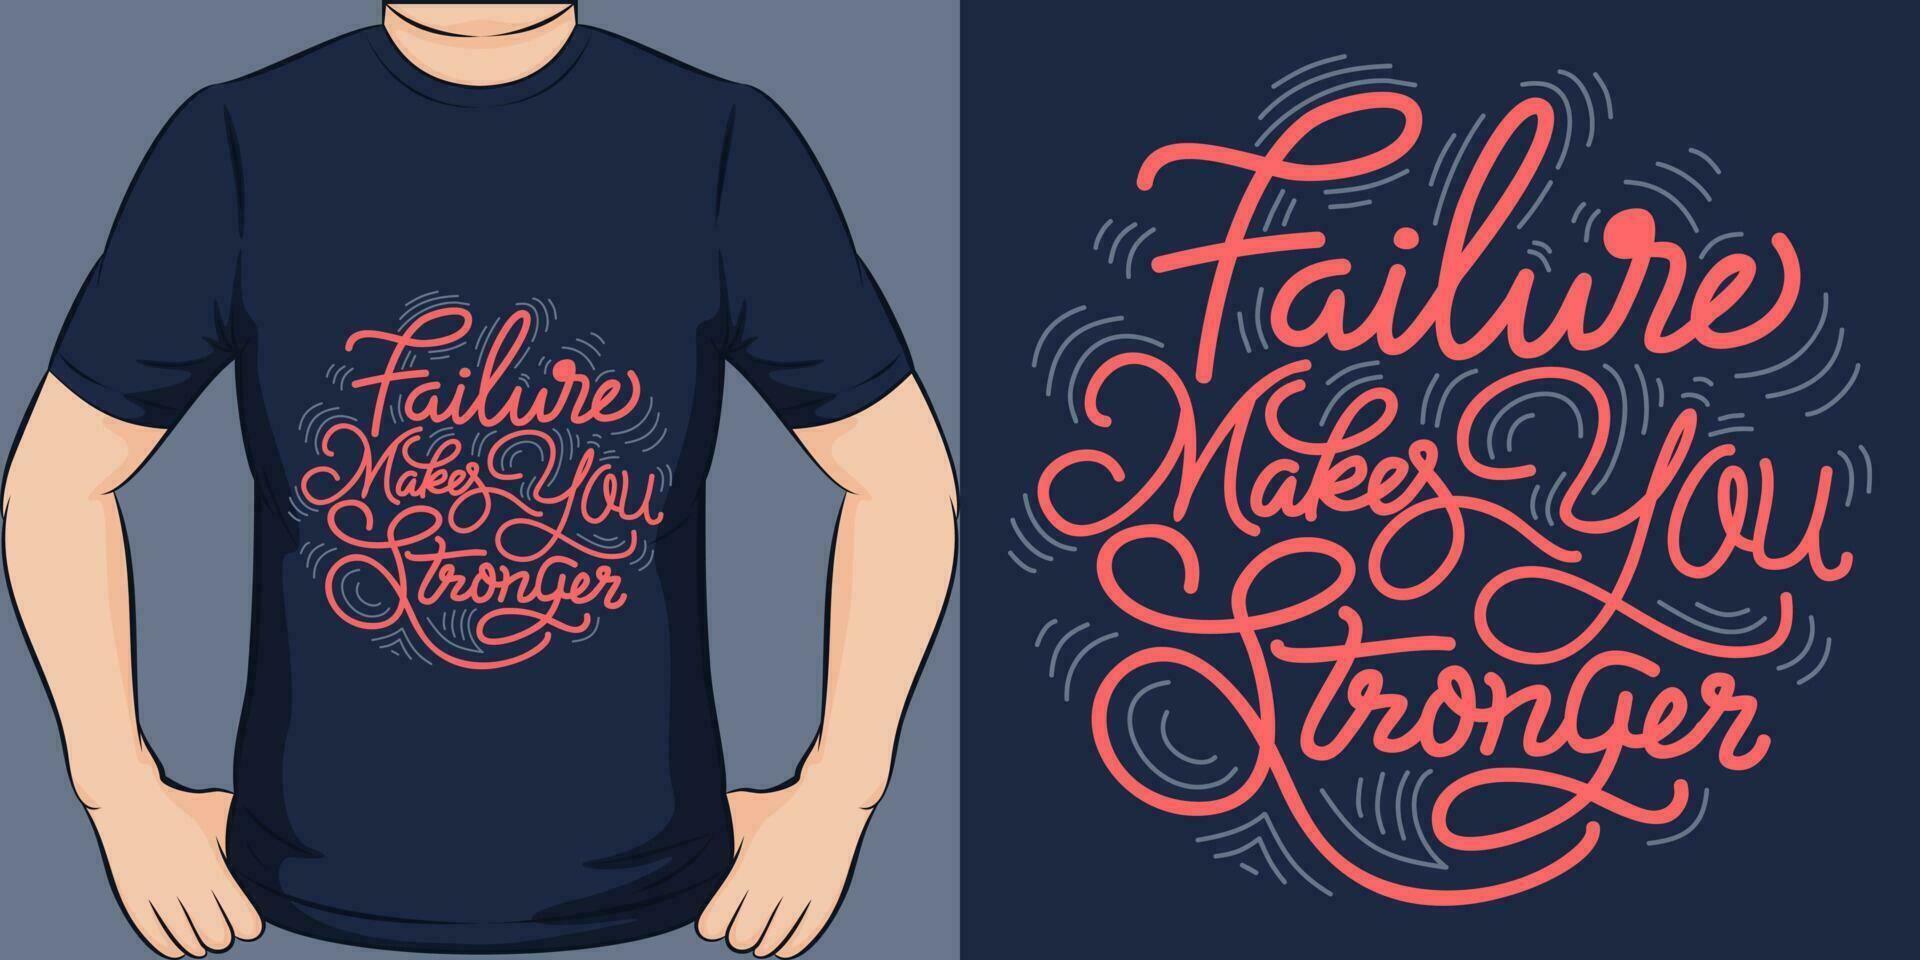 mislukking maakt u sterker, motiverende citaat t-shirt ontwerp. vector